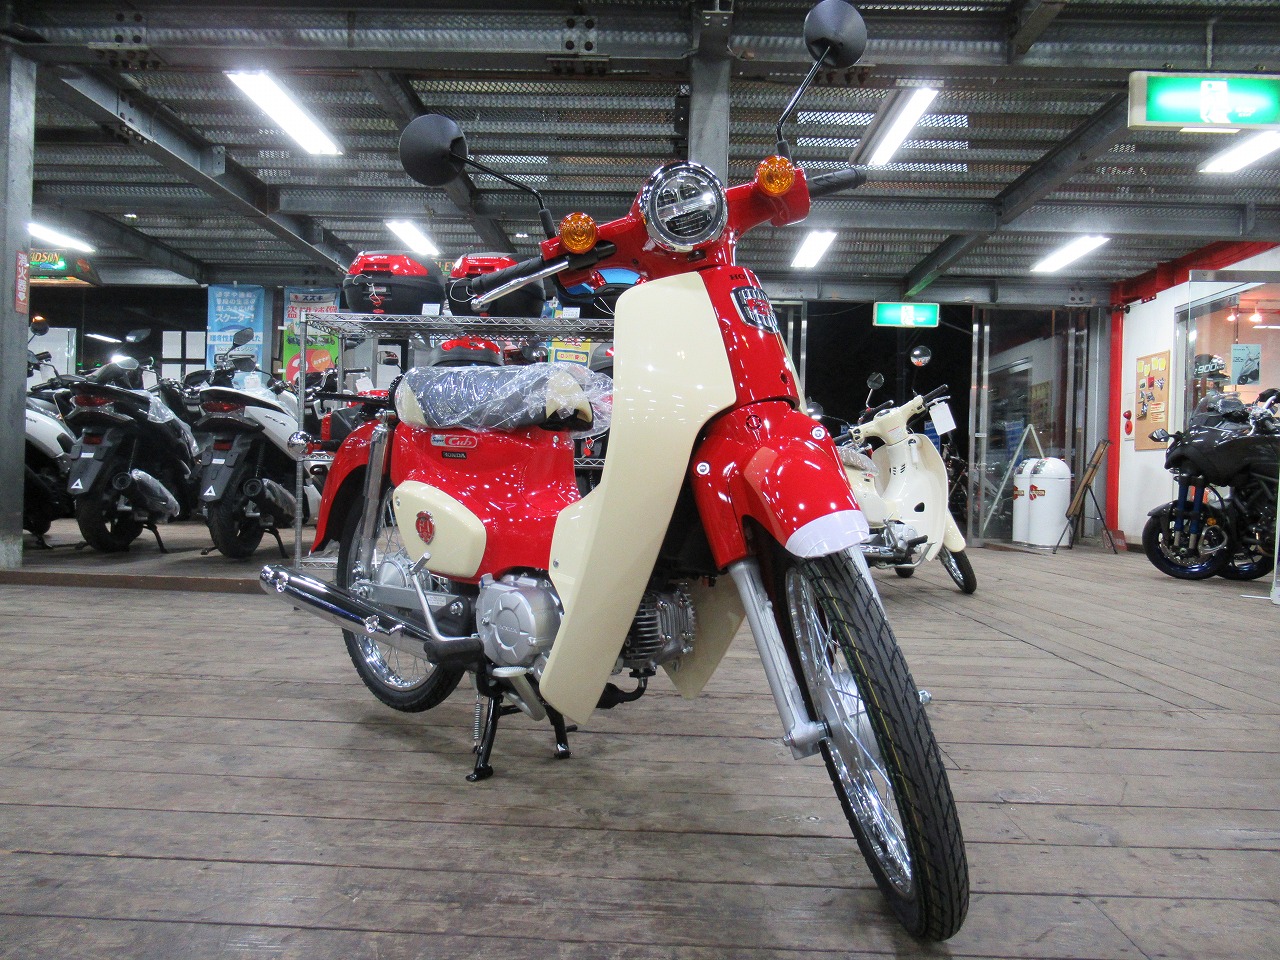 スーパーカブ50 60周年アニバーサリーカラー入荷しました 最新情報 U Media ユーメディア 中古バイク 新車バイク探しの決定版 神奈川 東京でバイク探すならユーメディア